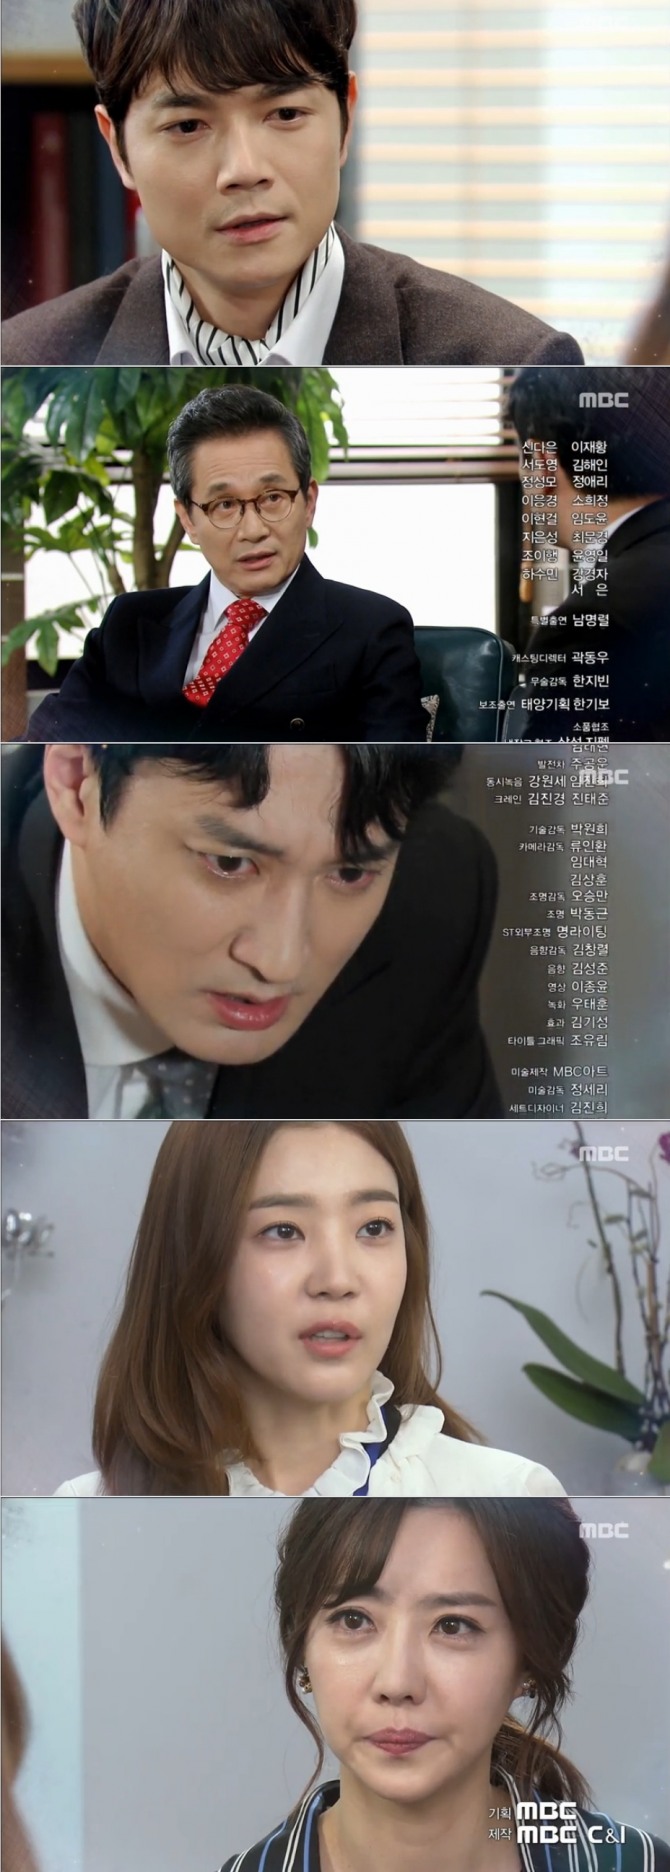 19일 오전 방송되는 MBC 일일드라마 '역류'90회에서는 김인영(신다은)이 정체를 파악한 강동빈(이재황_)과 채유란(김해인)에게 본격적으로 반격을 개시하는 반전이 그려진다. 사진=MBC 영상 캡처